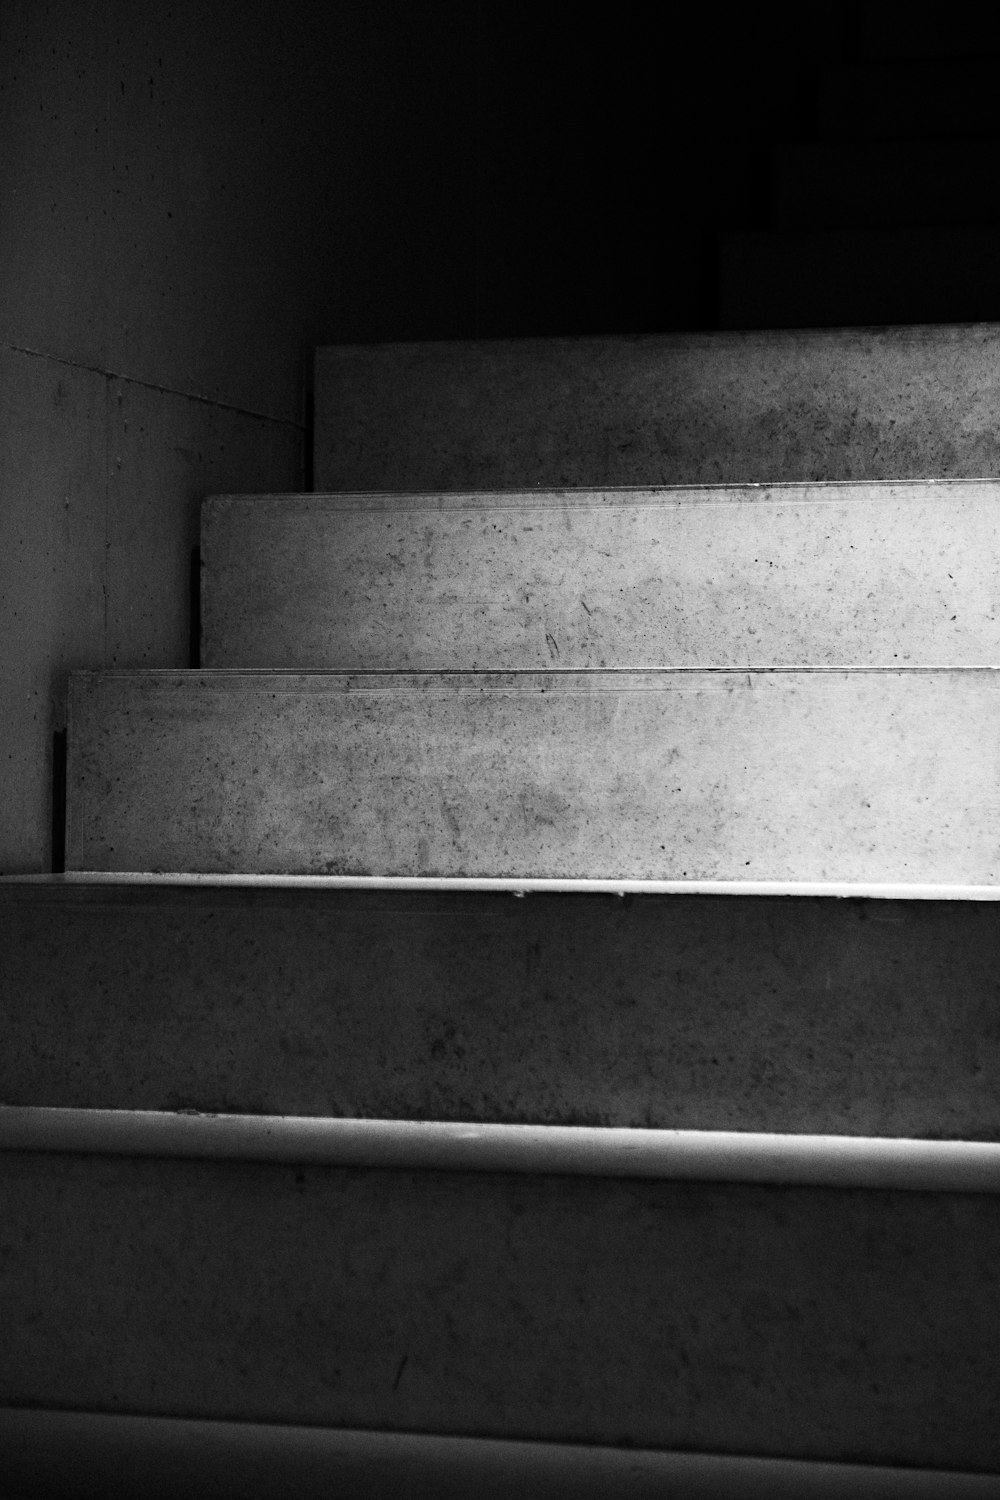 Escaliers en béton gris dans la photographie en niveaux de gris